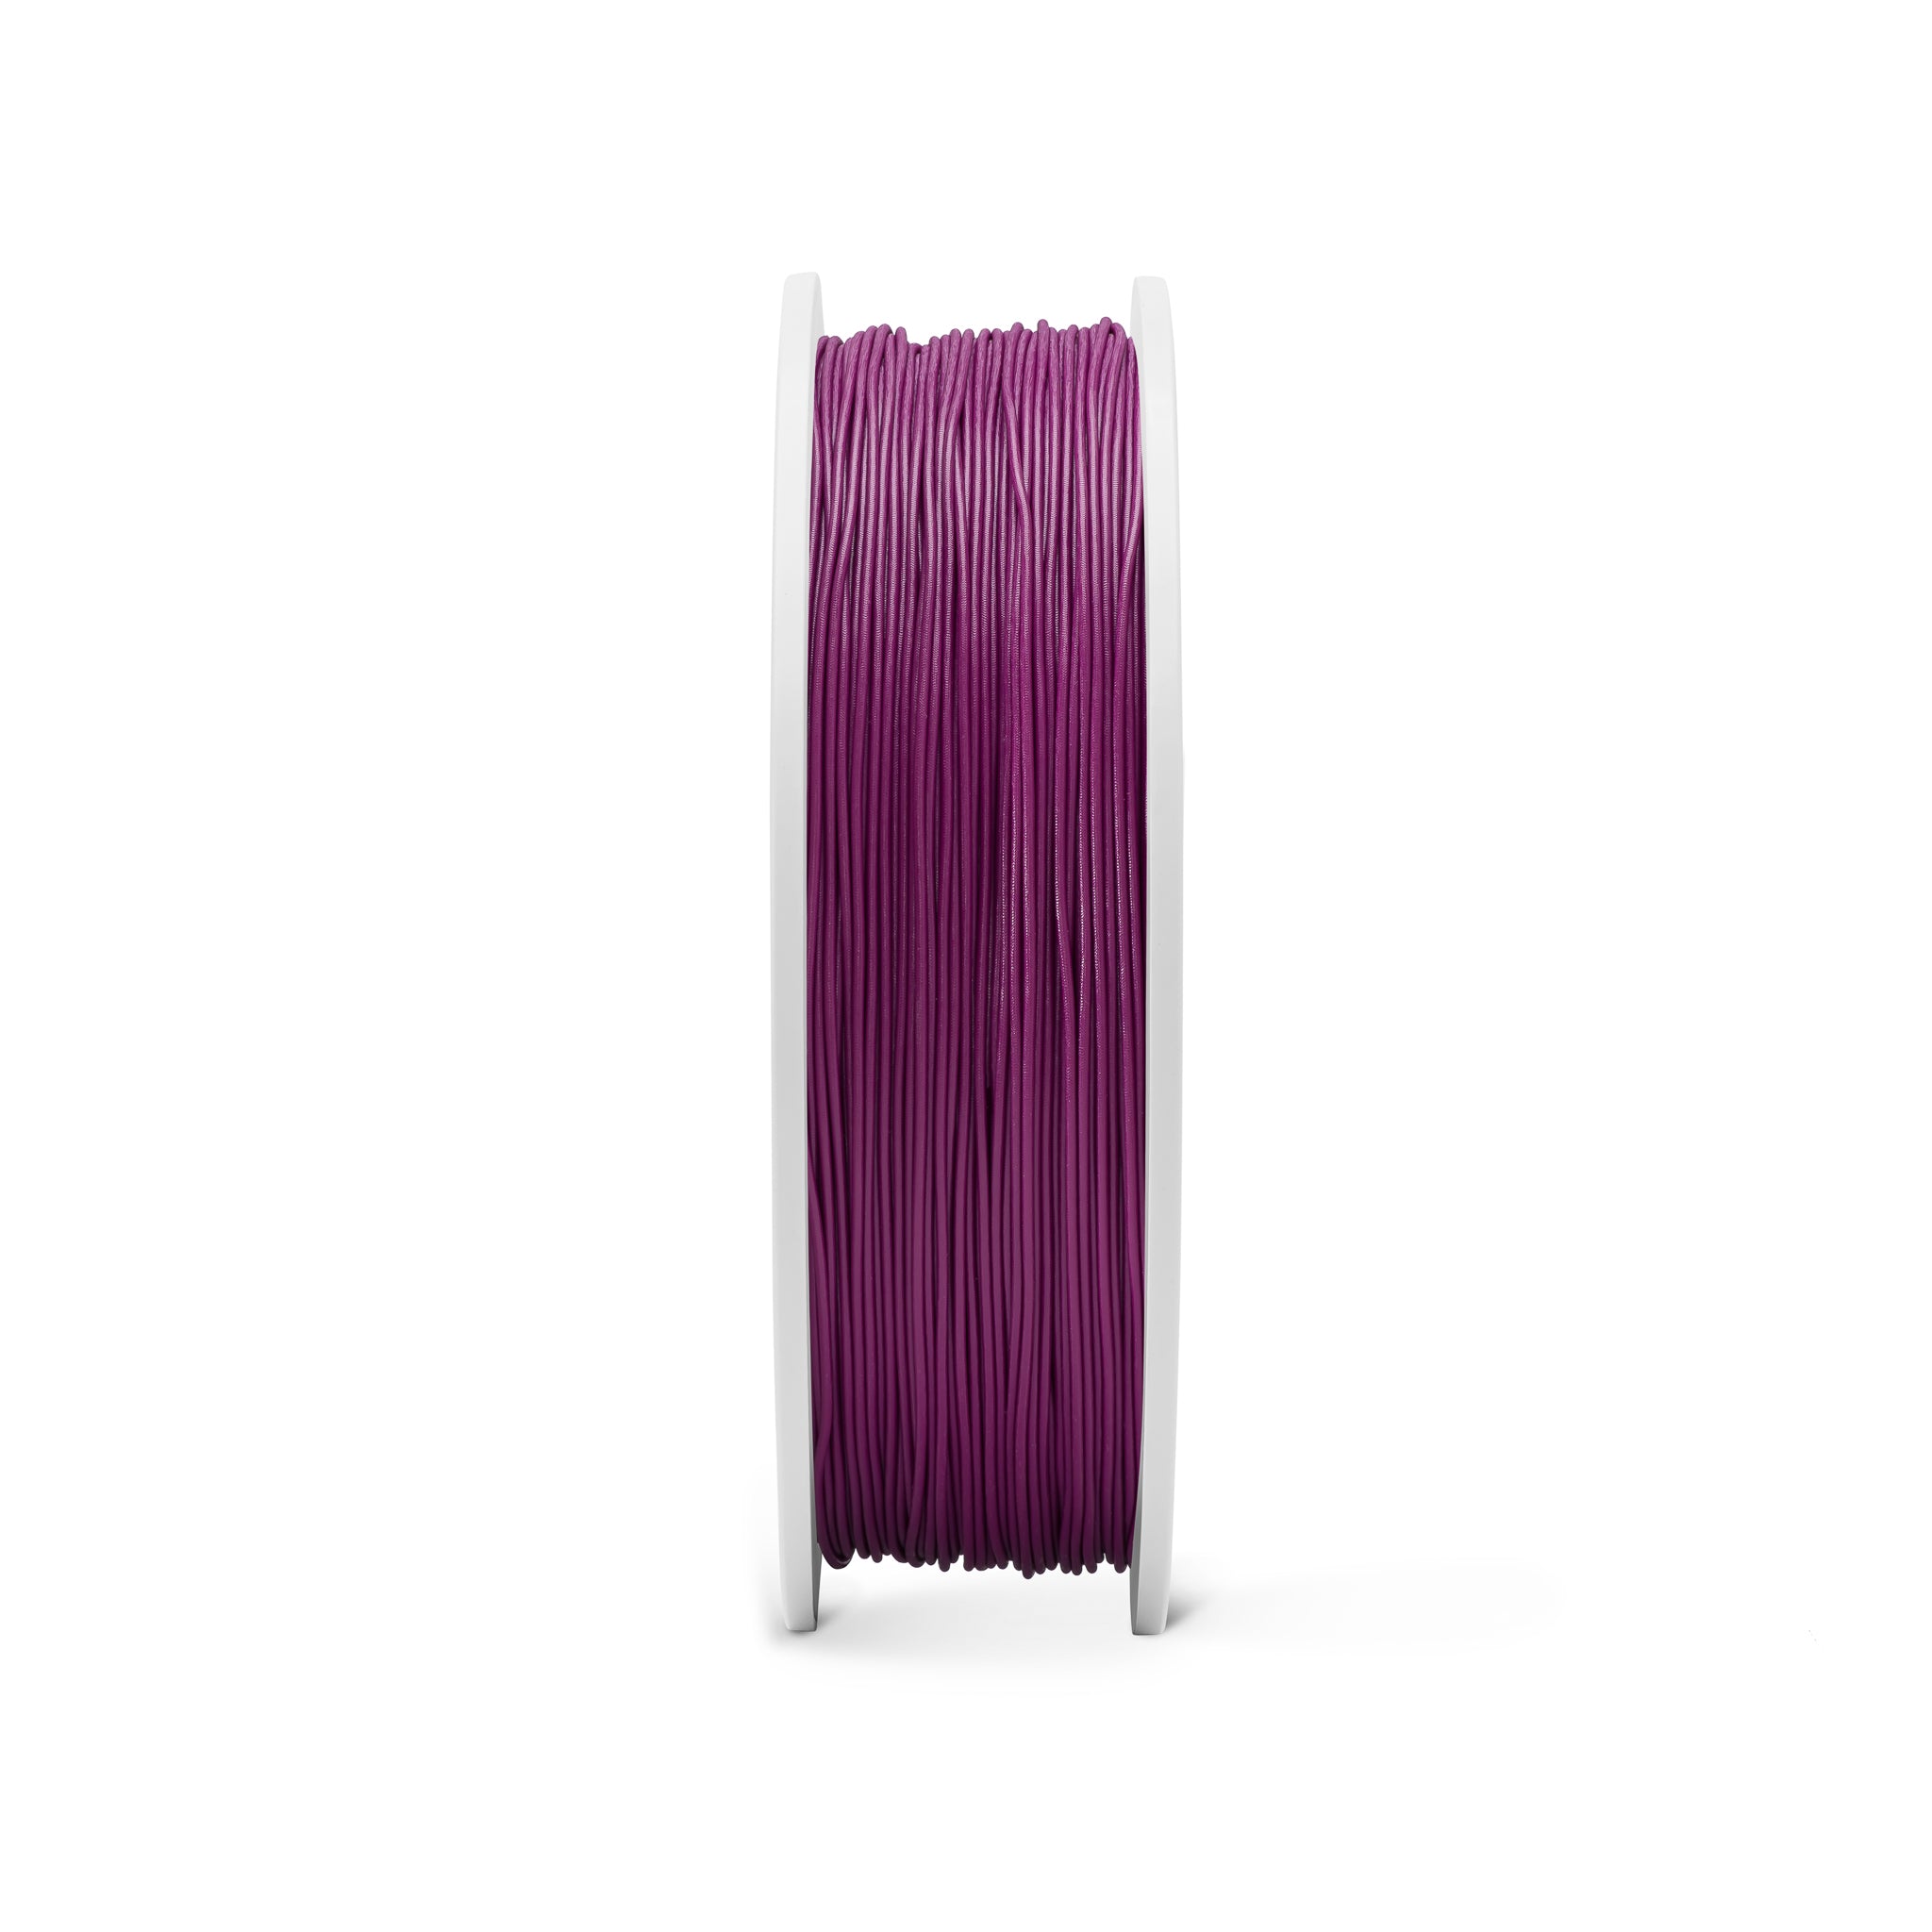 Fiberlogy FIBERFLEX 40D - Purple [1.75mm] (59,80€/Kg)